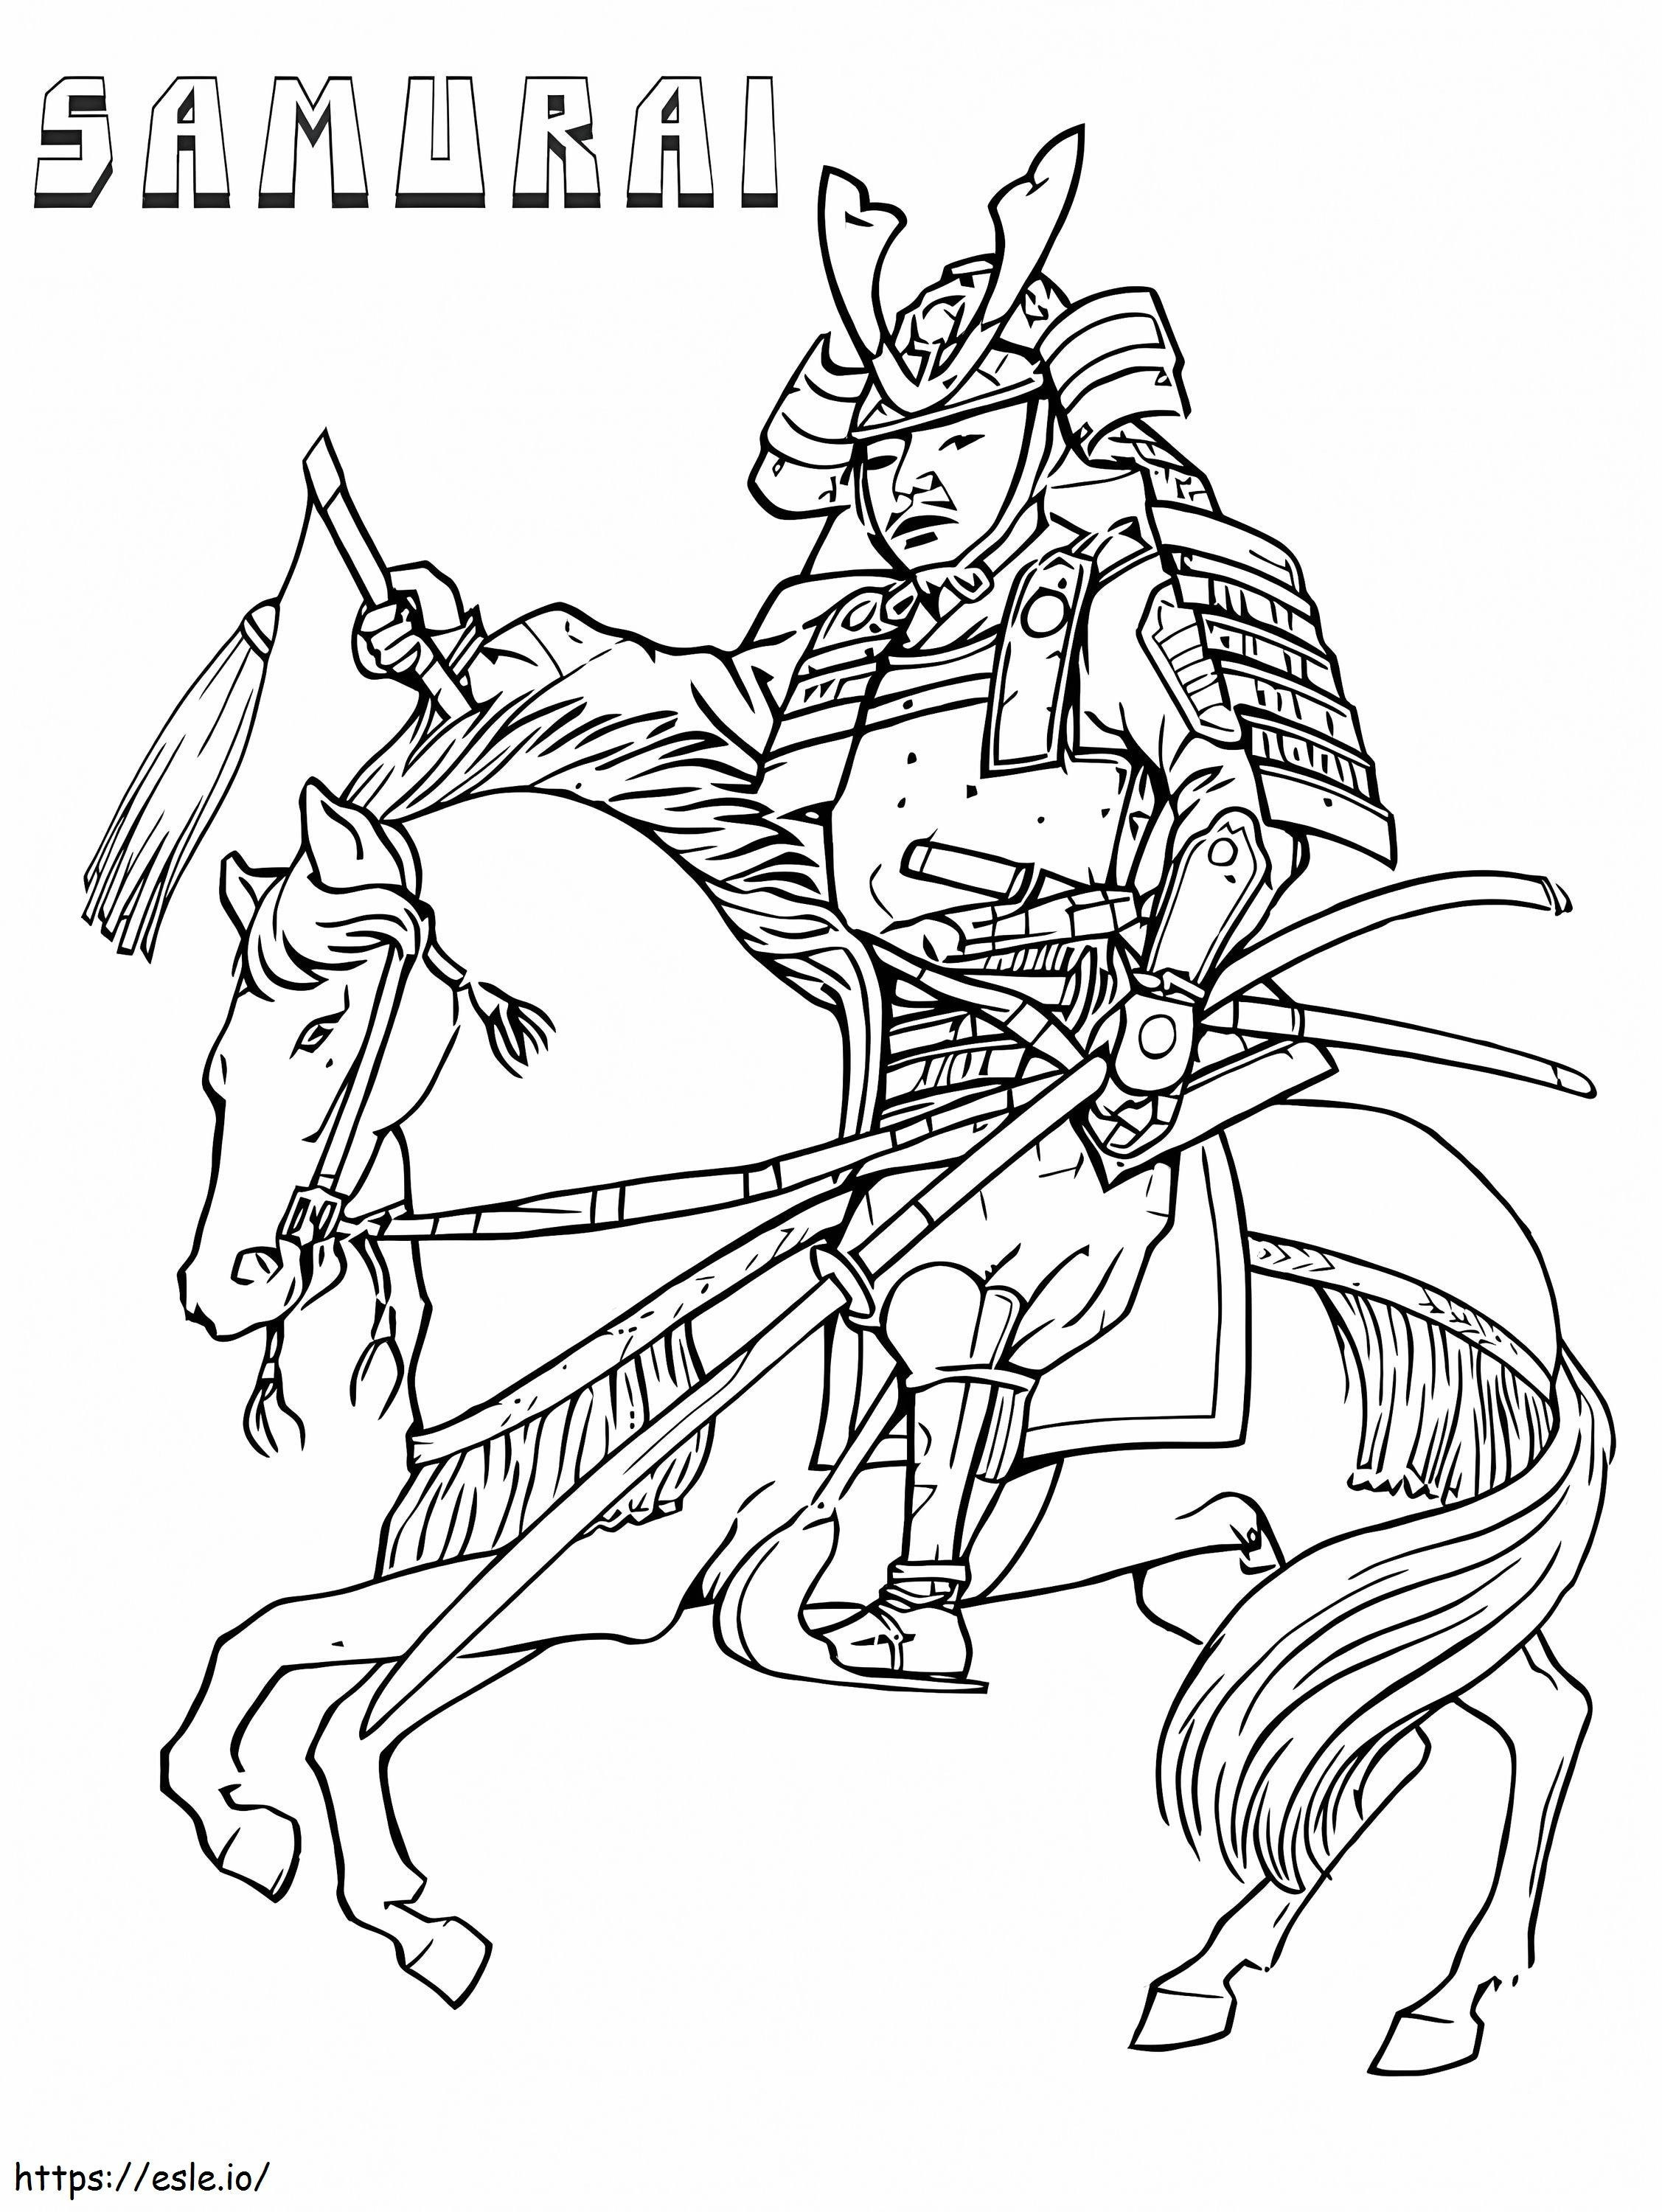 Samurai auf Pferd ausmalbilder